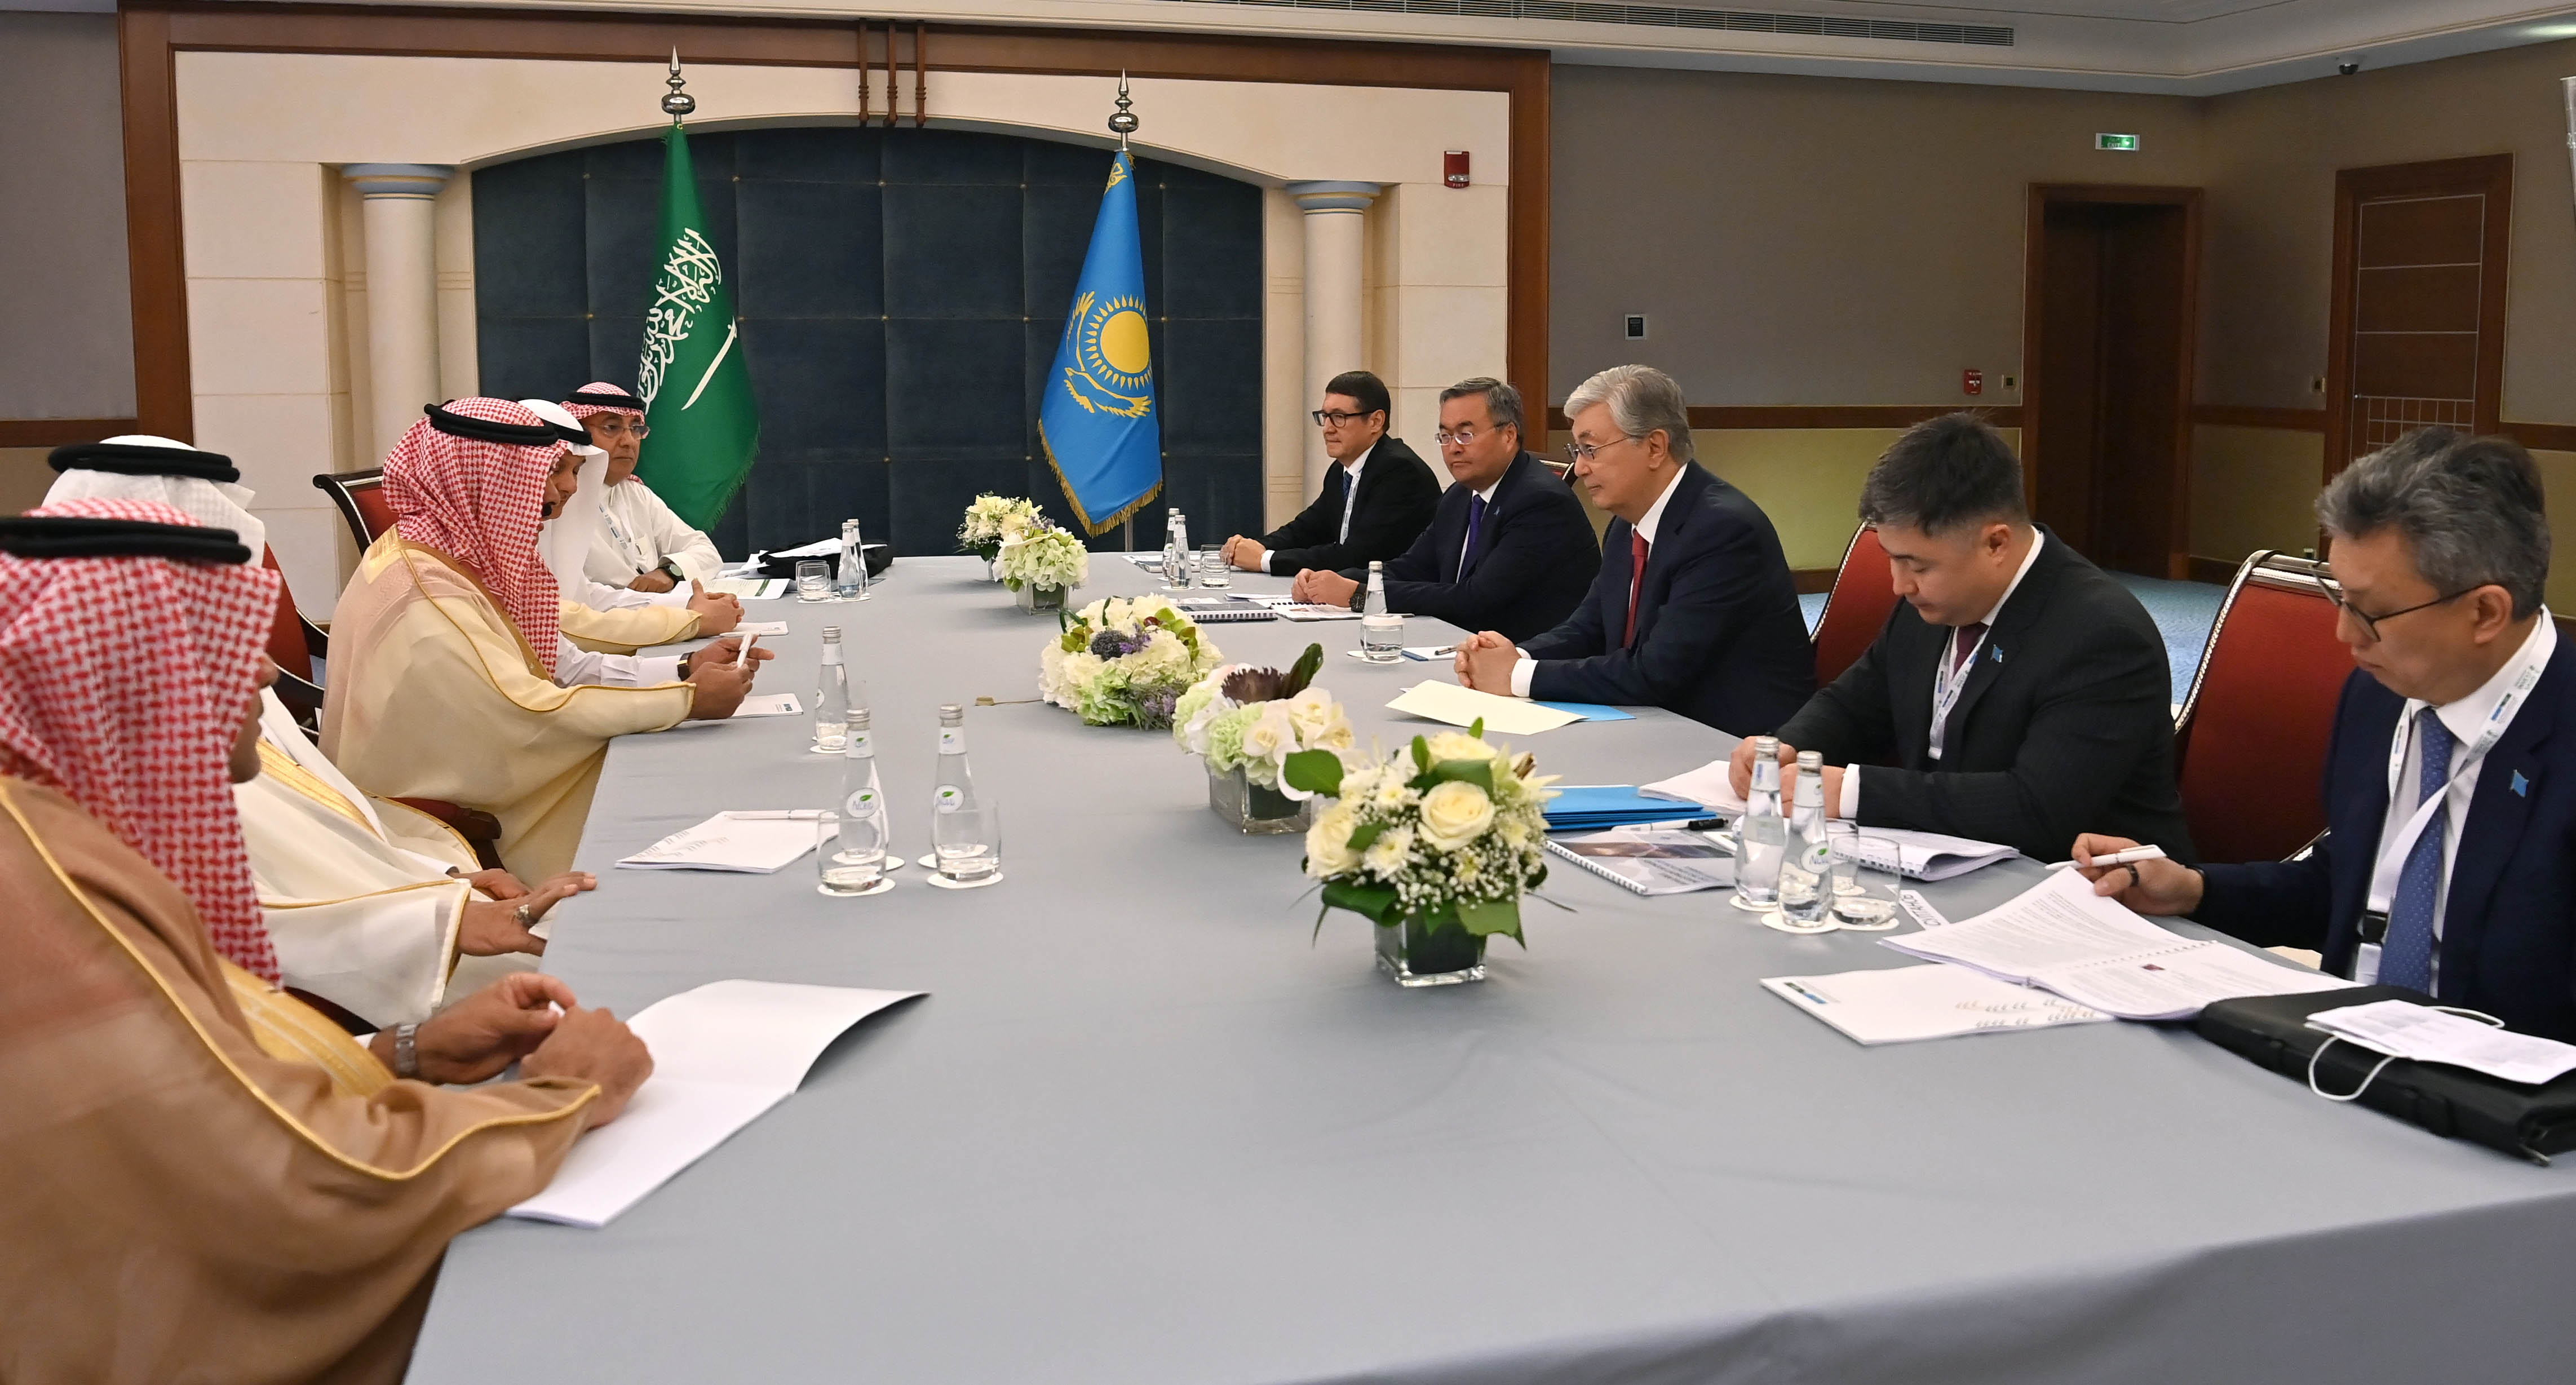 Касым-Жомарт Токаев провел встречи с руководителями крупнейших компаний Саудовской Аравии